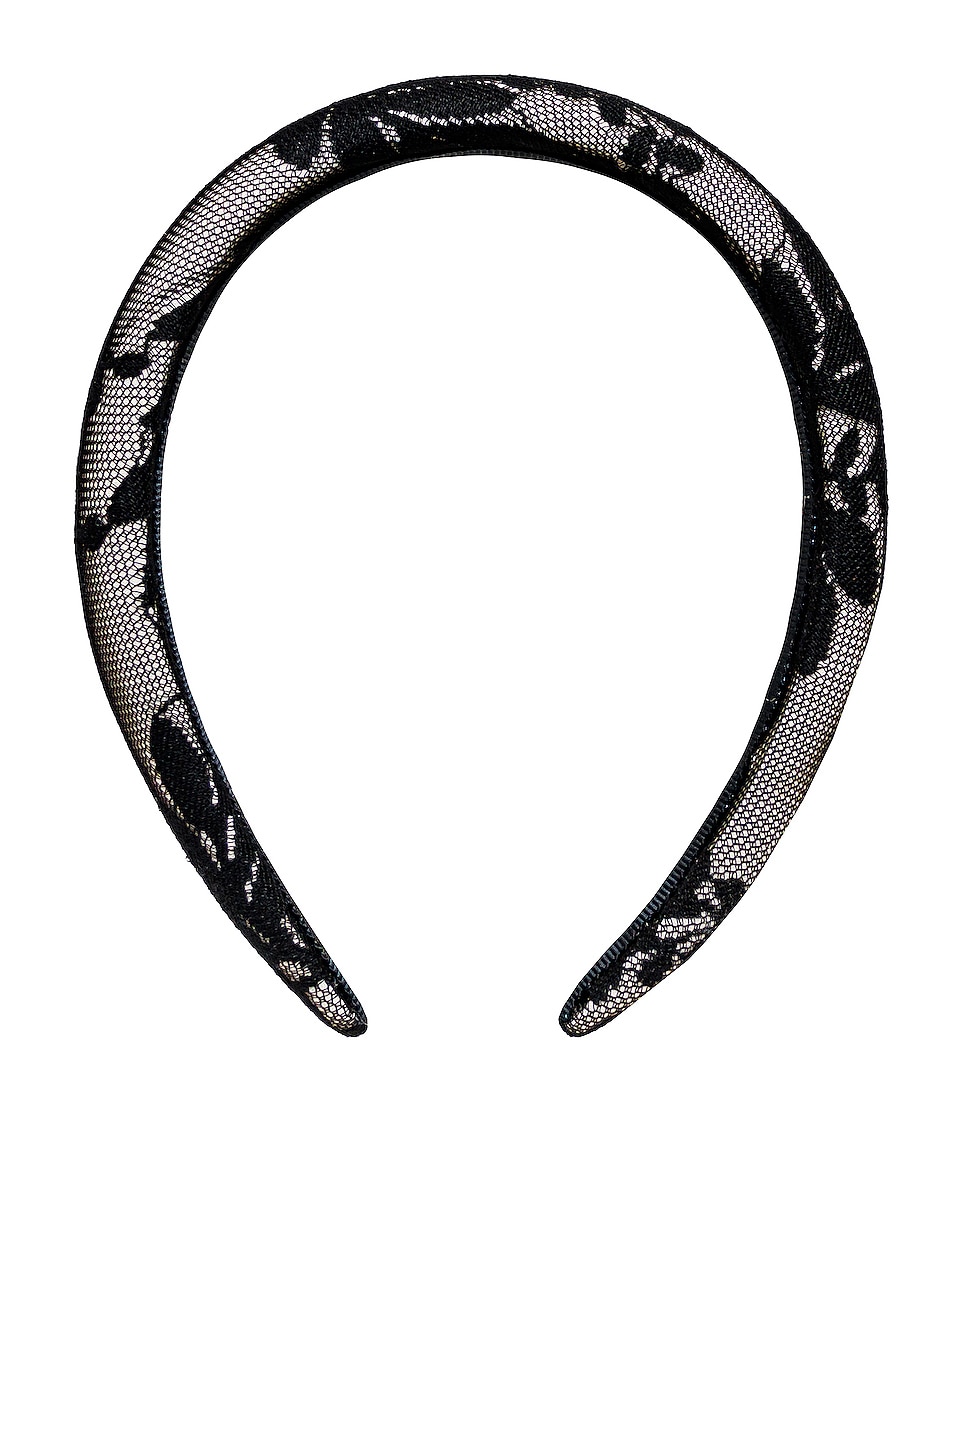 Emi Jay Halo Headband in Black Lace | REVOLVE